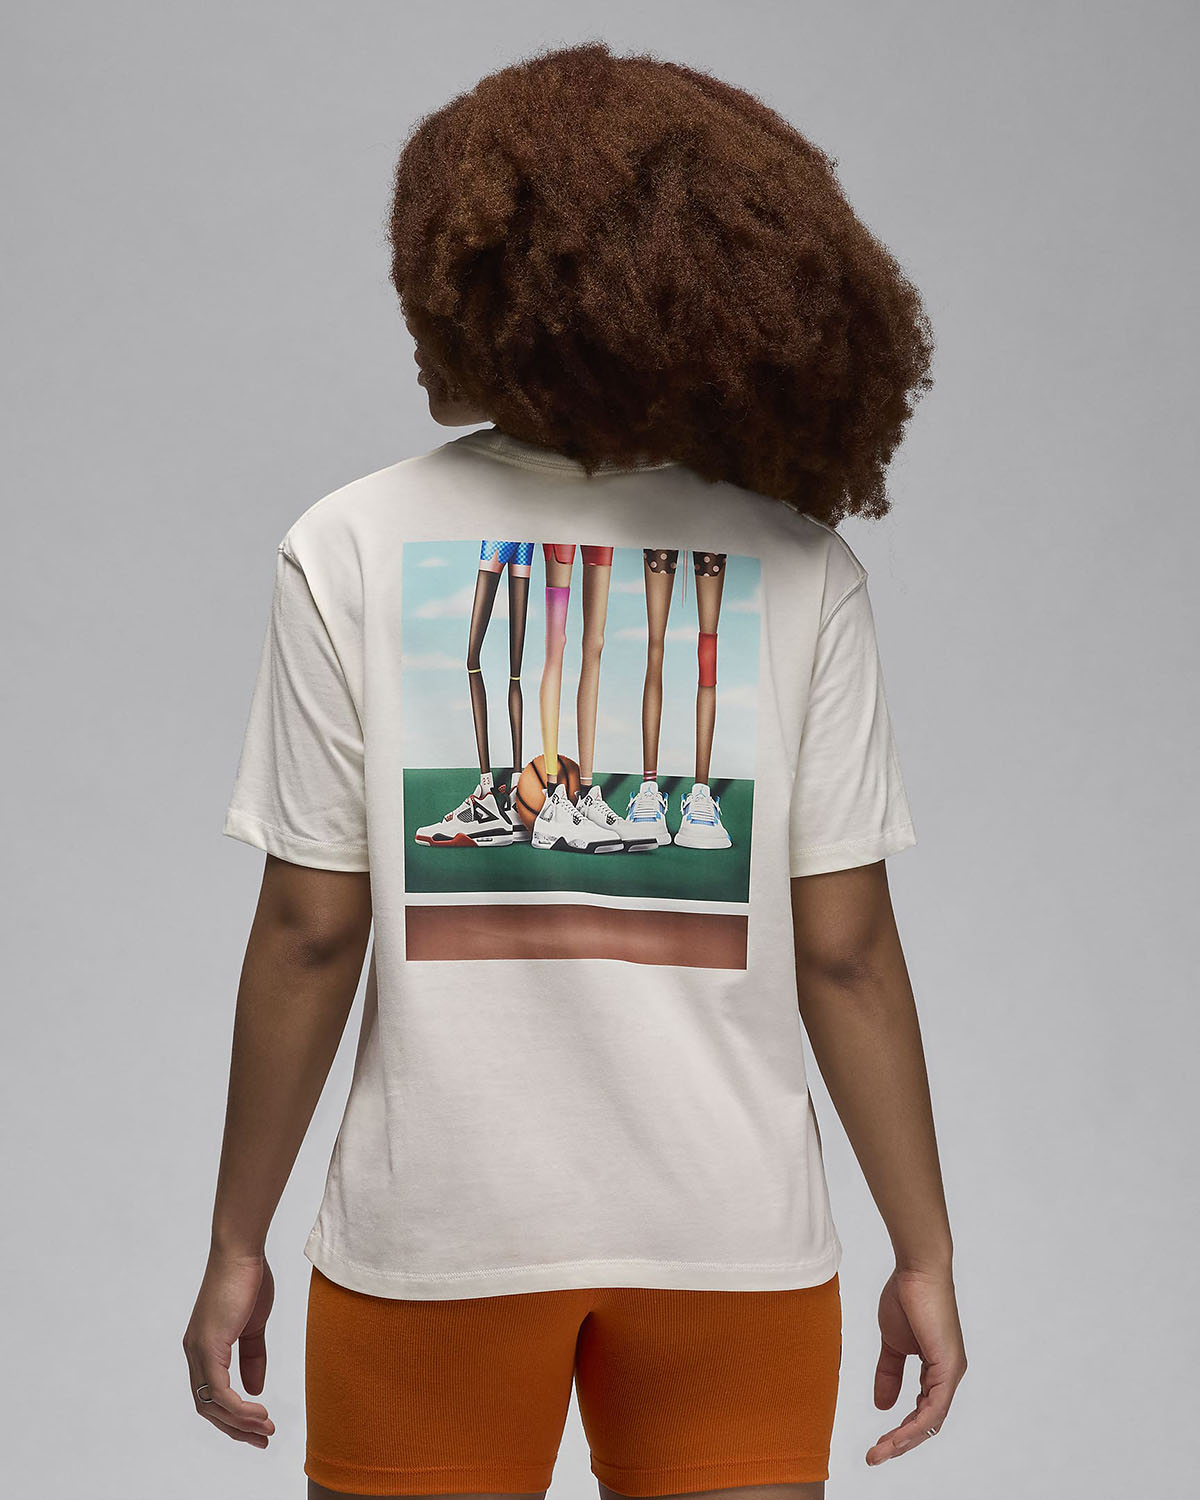 jordan Been Artist Series Darien Birks Womens T Shirt Sail 2